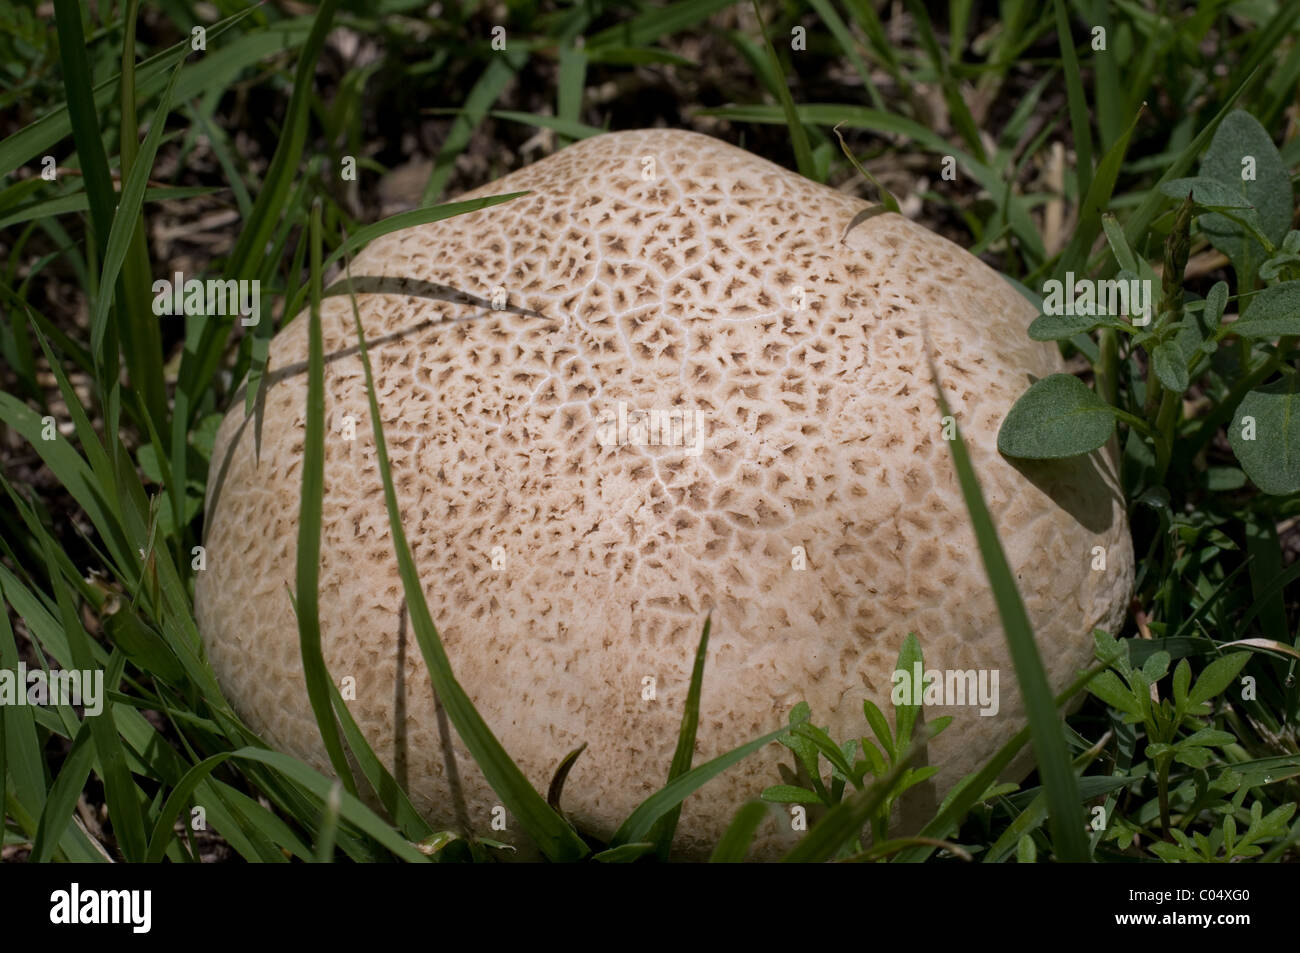 Mature giant puffball mushroom (Calvatia gigantea). This one was 20 cm in diameter. Stock Photo